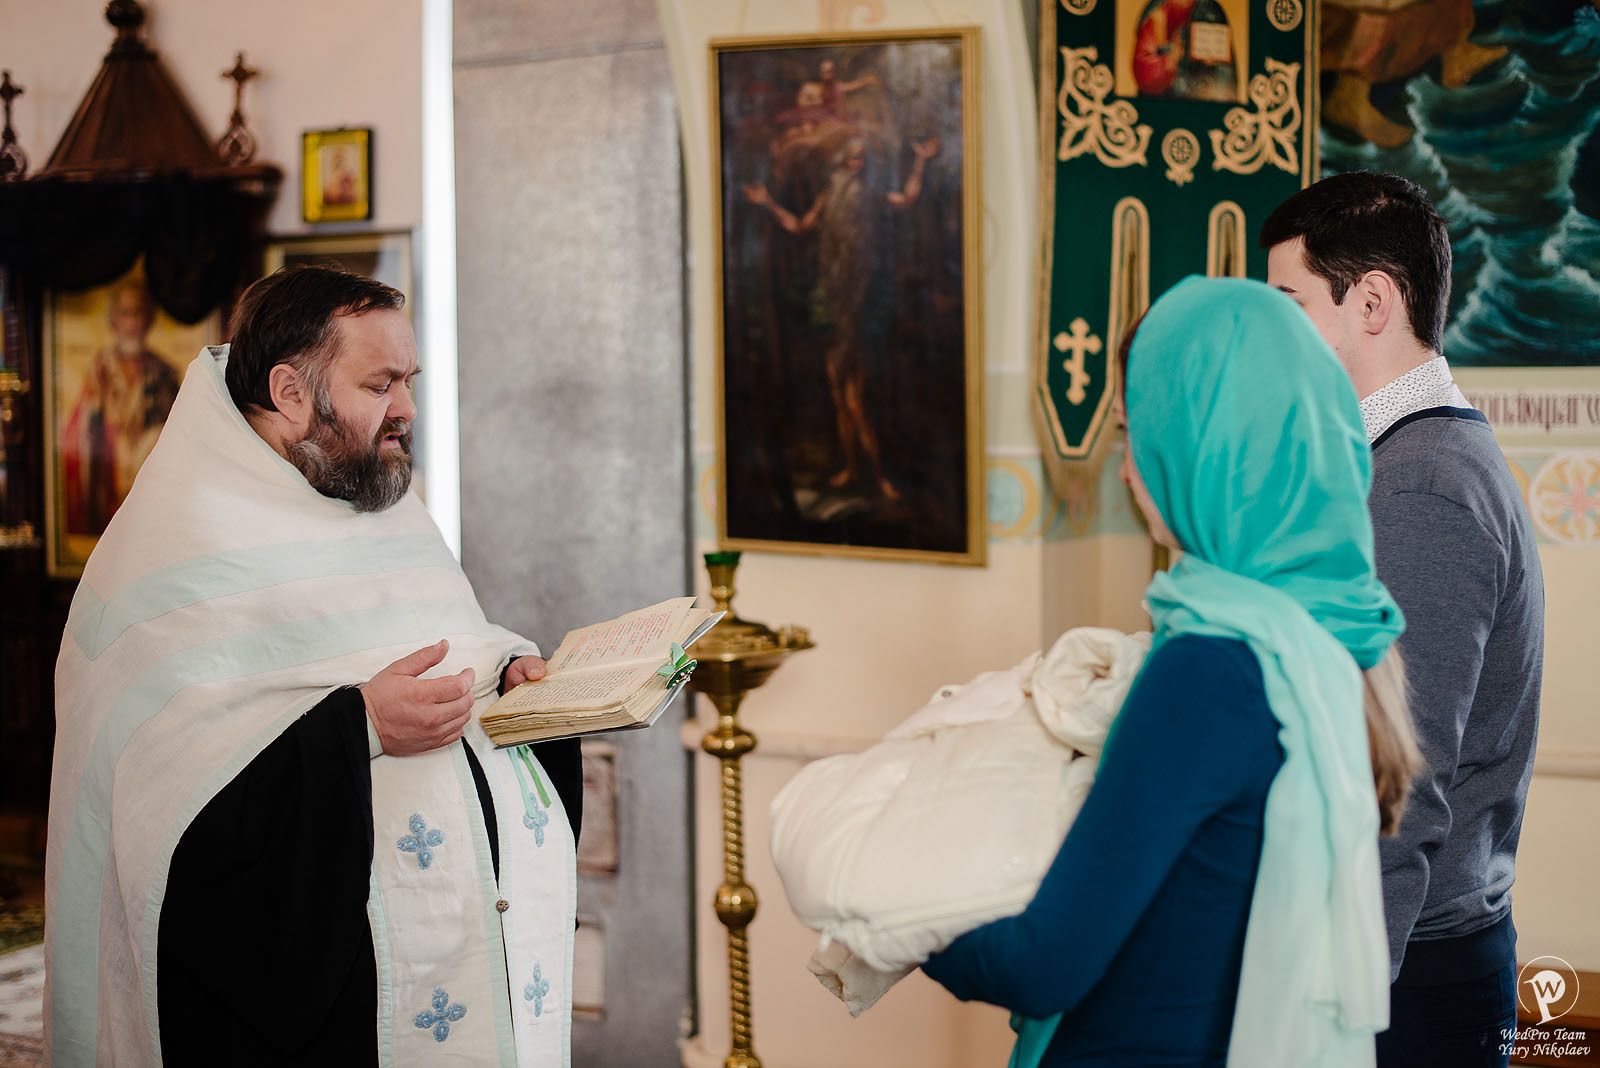 Юрий Николаев - фотограф Love Story, свадебный фотограф, семейный фотограф в городе Могилев, фотография от 29.05.2018